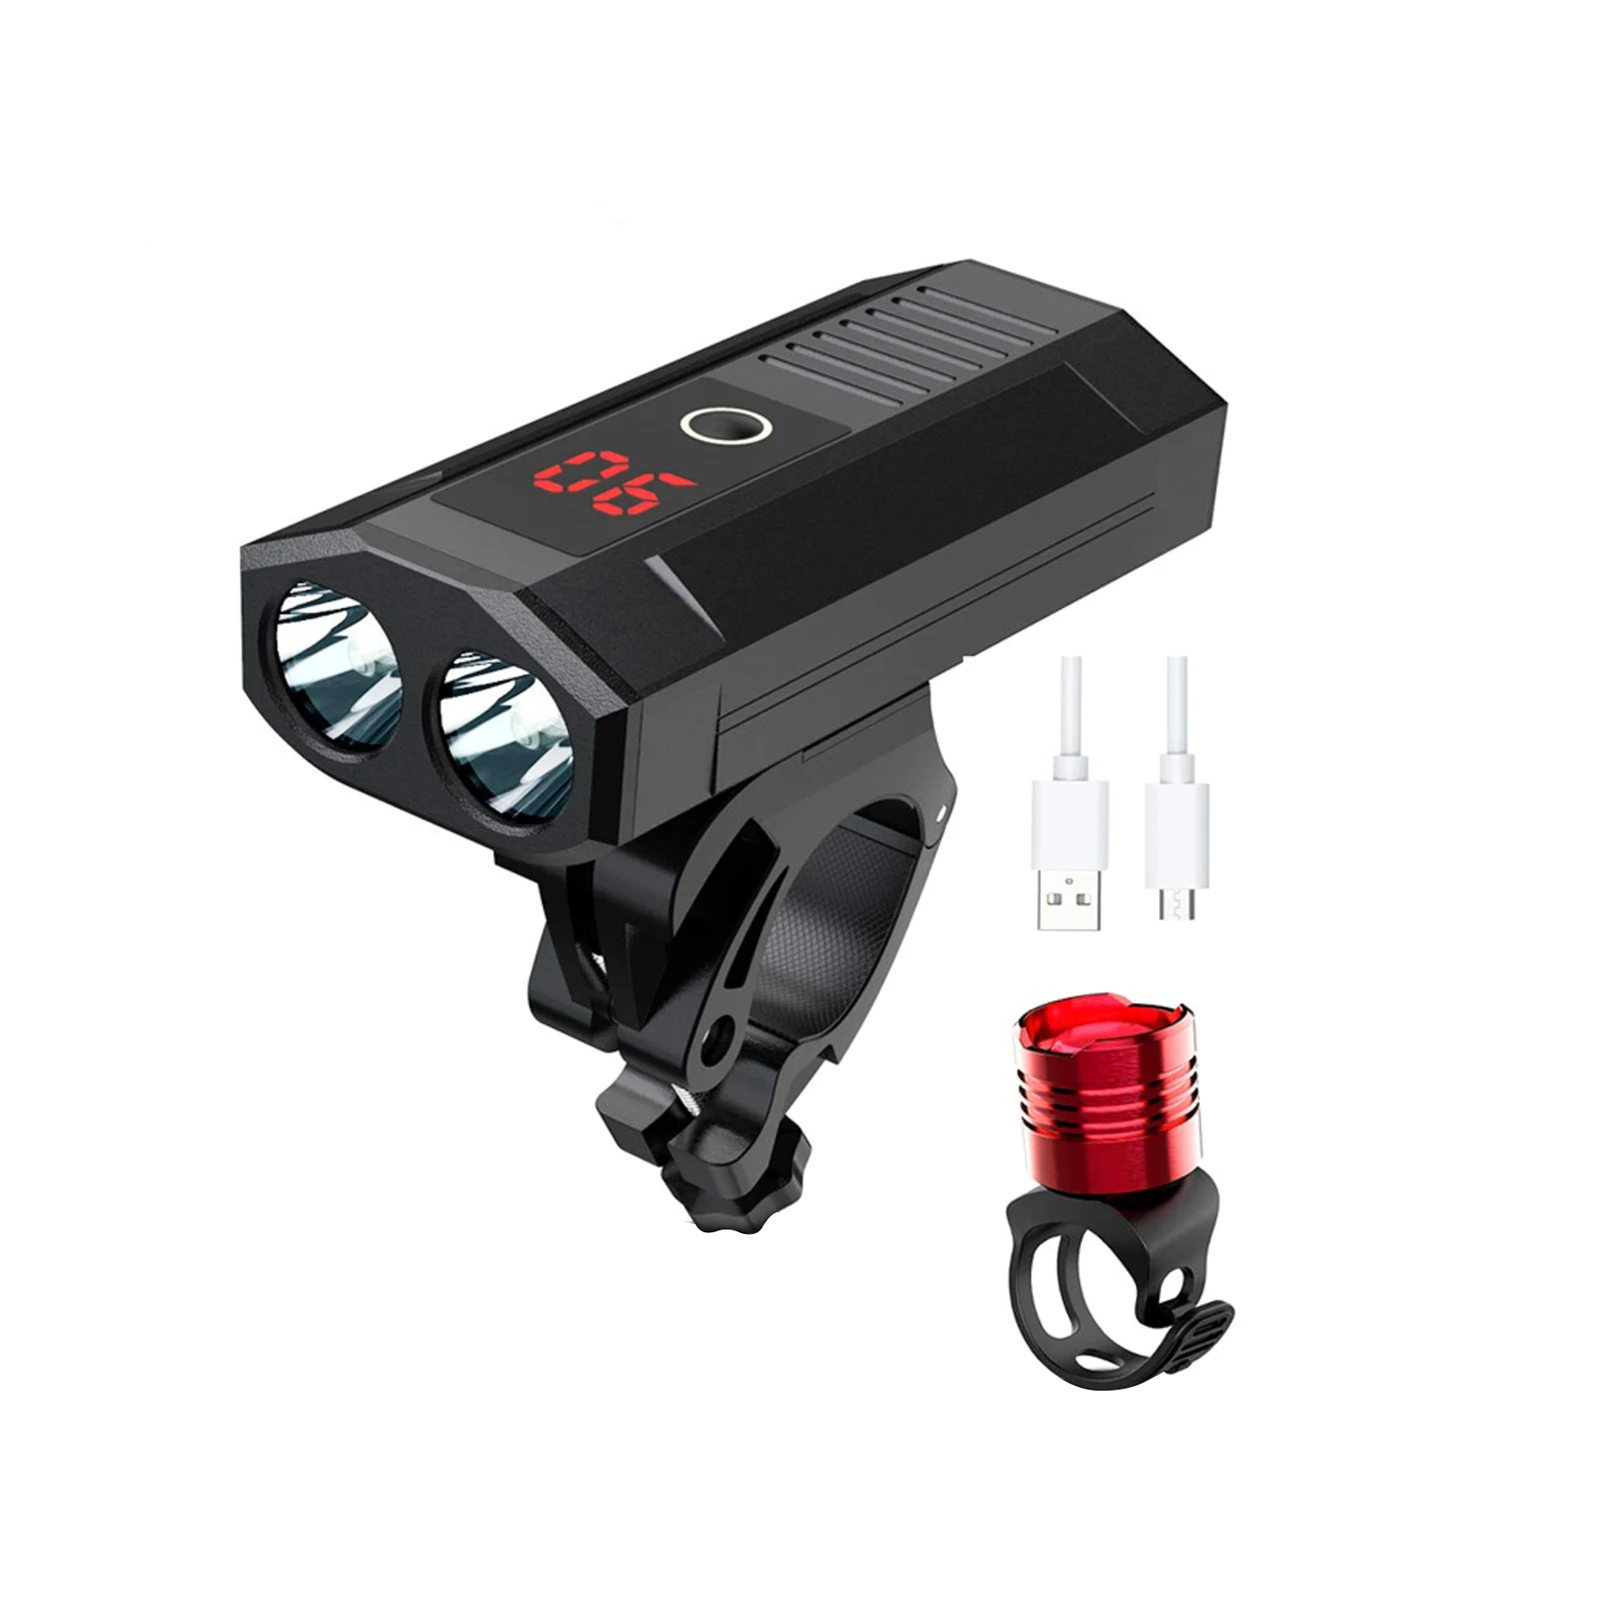 

Светодиодный велосипедный фонарь с аккумулятором на 5200 мА · ч и зарядкой от USB